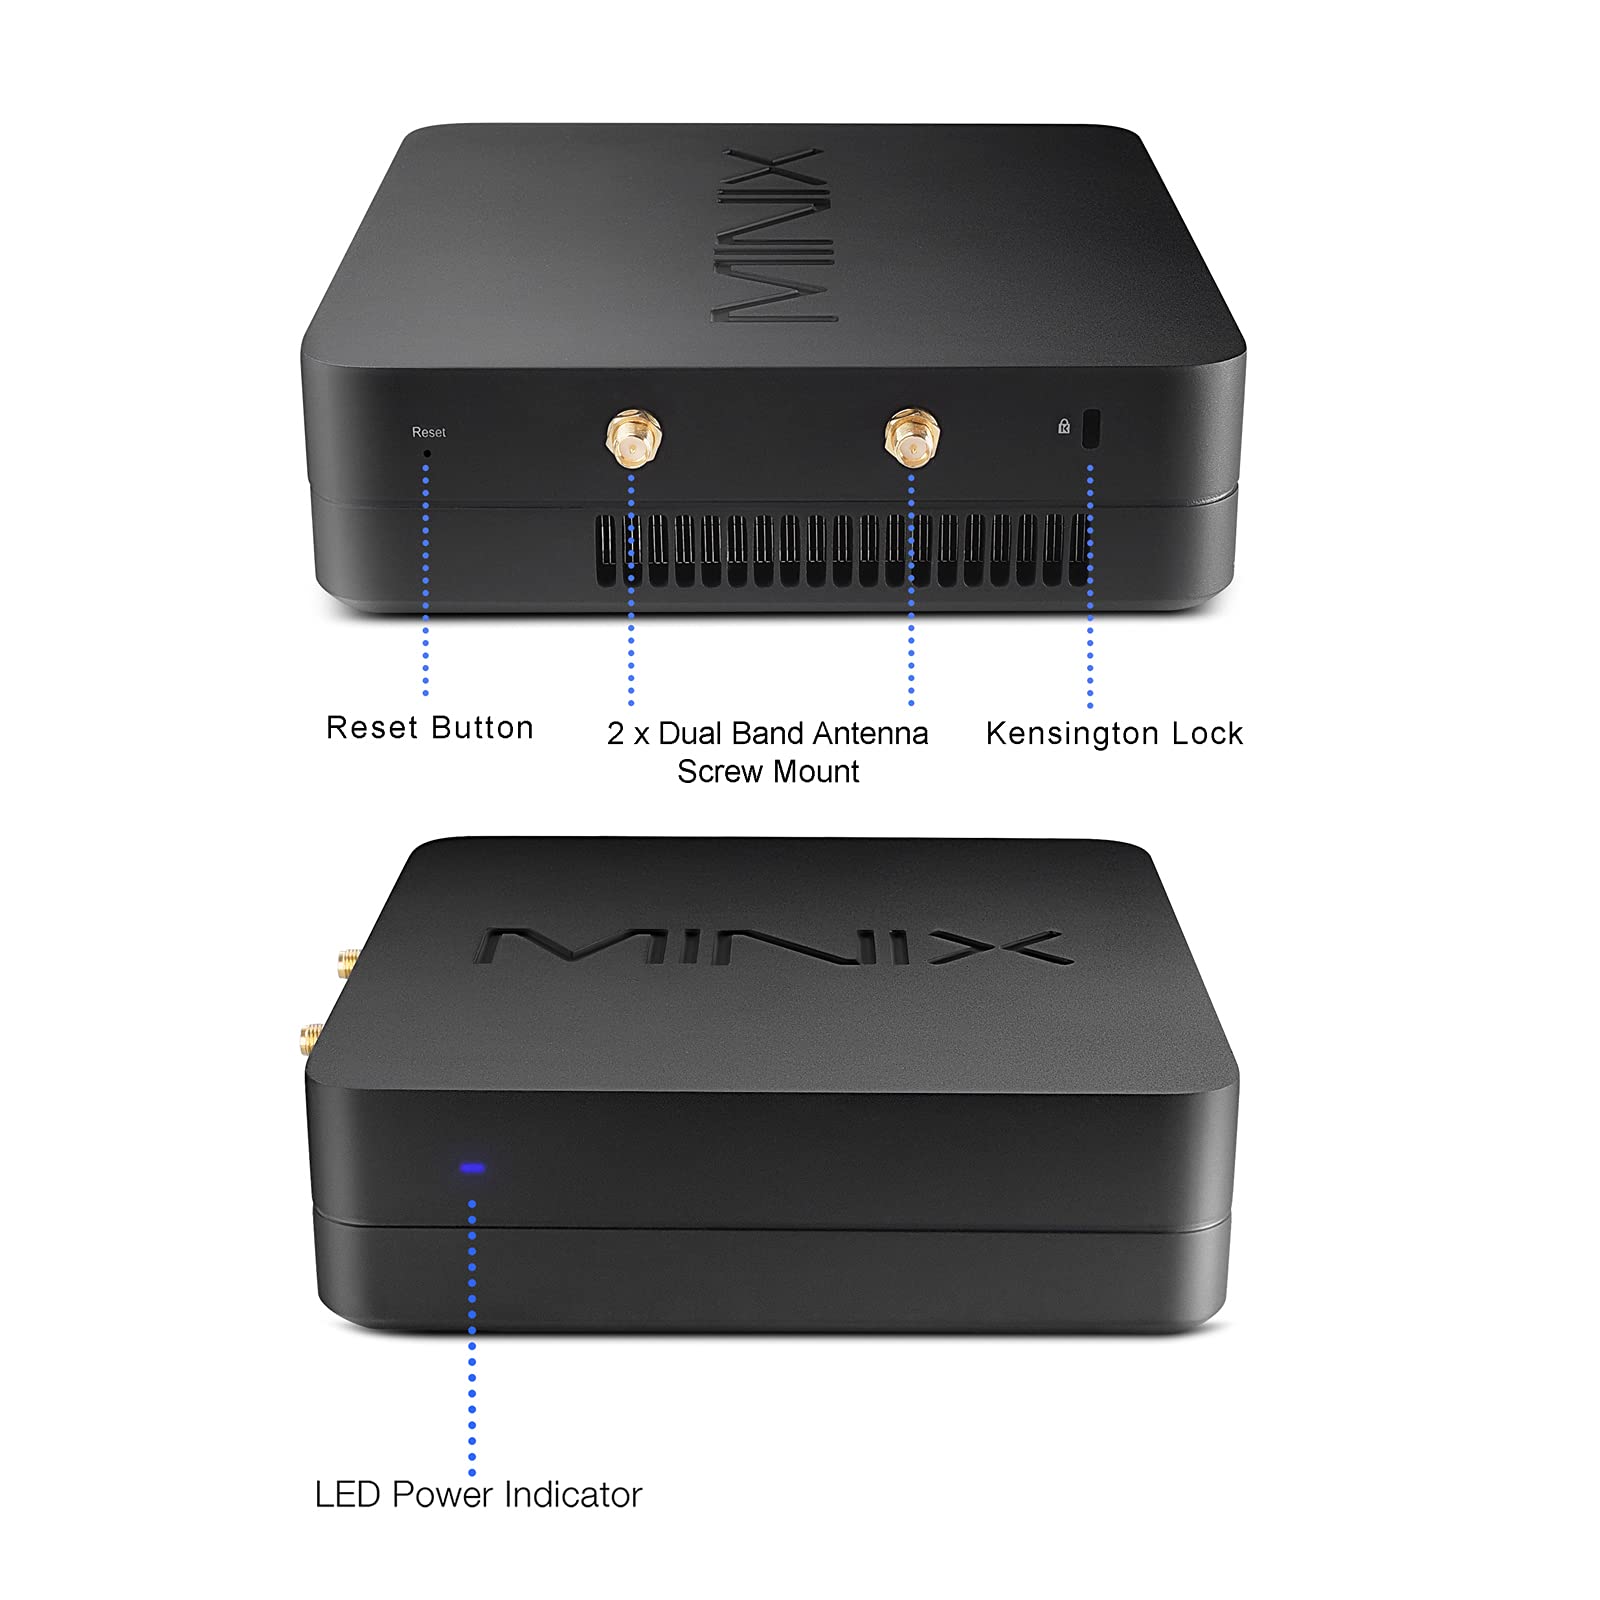 MINIX NGC-5 Pro, 8GB/256GB Mini Computer, Triple 4K @ 60Hz Display/HDMI 2.0/ USB-C/DP/Wi-Fi6/ Dual Gigabit Ethernet/4USB 3.1. Support 4G LTE, SSD (SATA), Auto Power On.(i5-10210U/Windows 11 Pro)